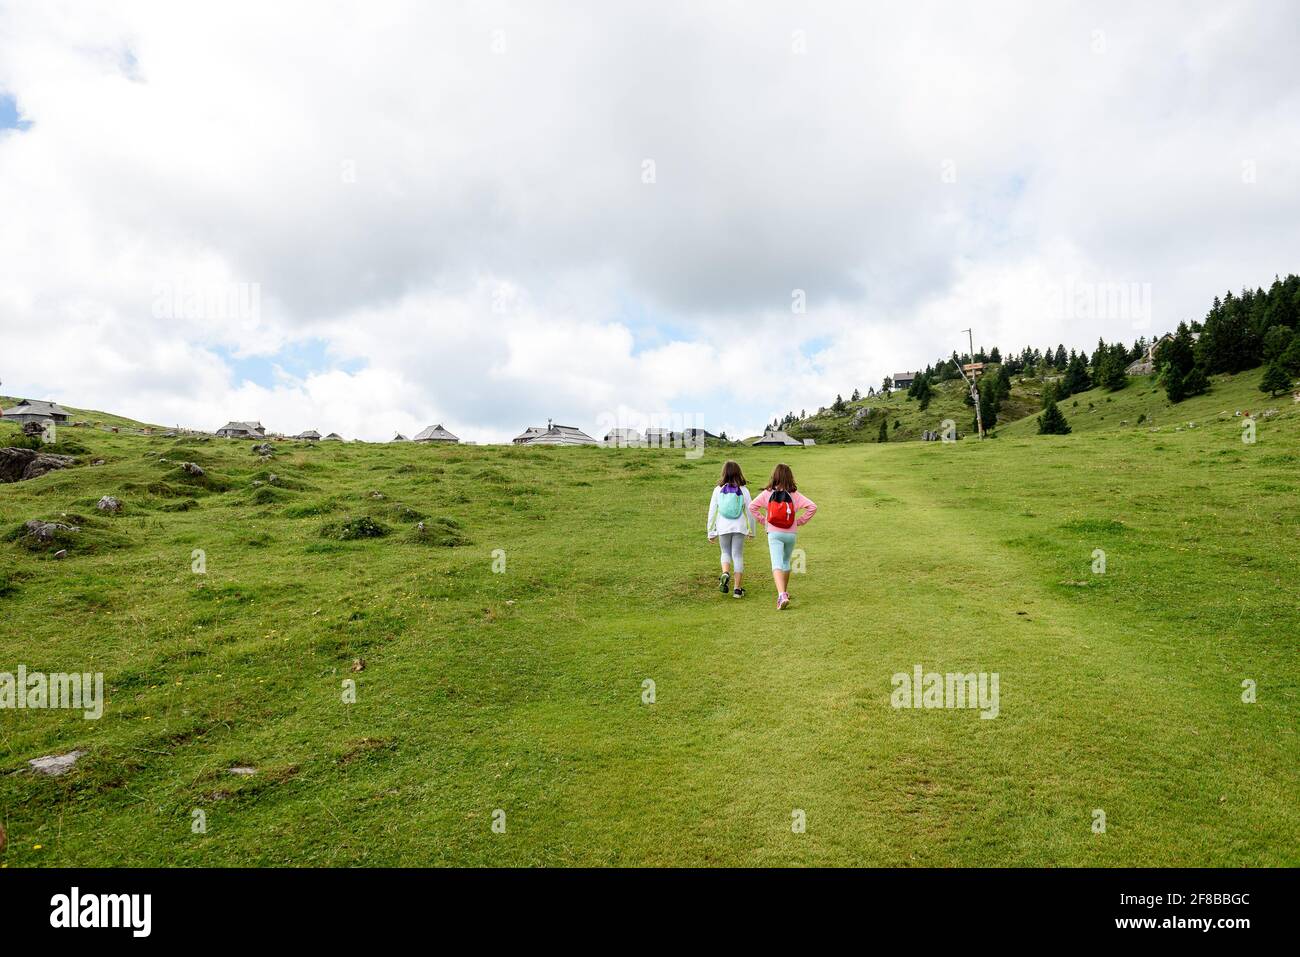 Les enfants qui font de la randonnée dans les montagnes ou les prairies avec des chaussures de randonnée sport. Les filles marchent sur le sentier de montagne en portant des bottes de montagne et des bâtons de marche. FR Banque D'Images